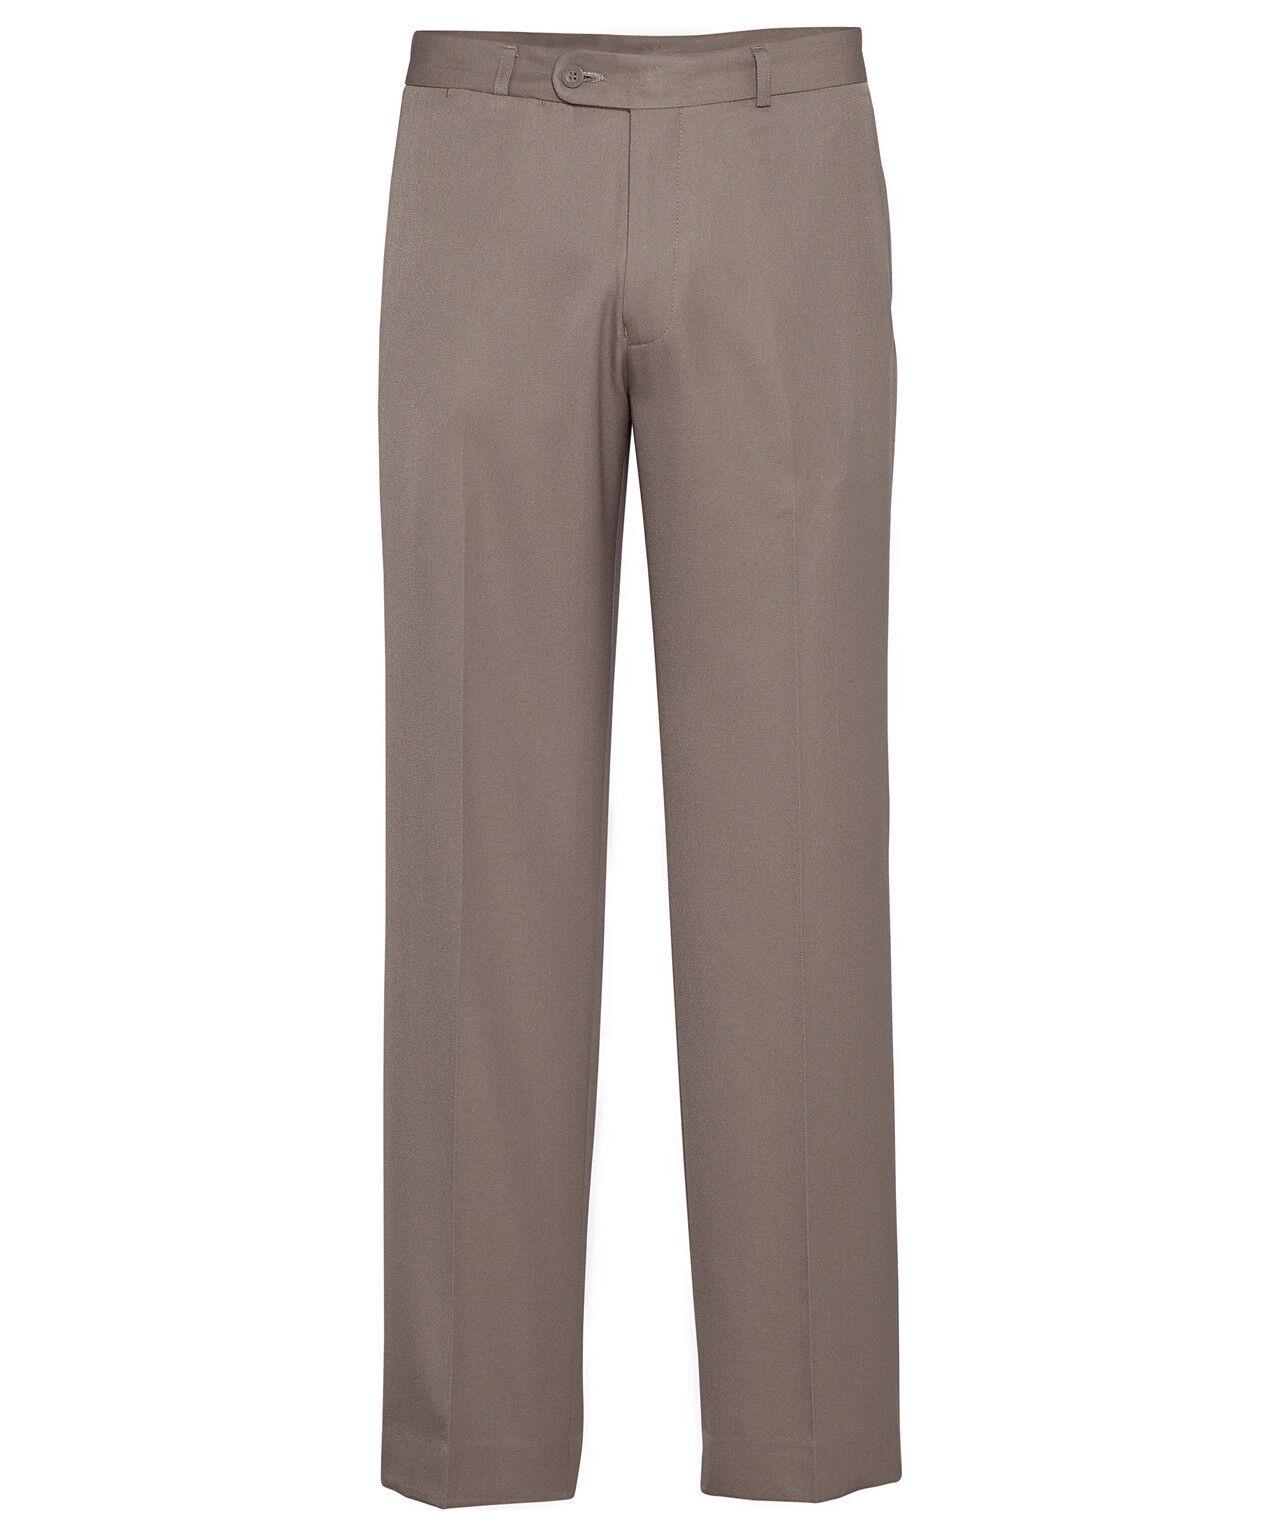 Bracks Trffb421 Plain Twill Trouser With High Twist Rrp $65